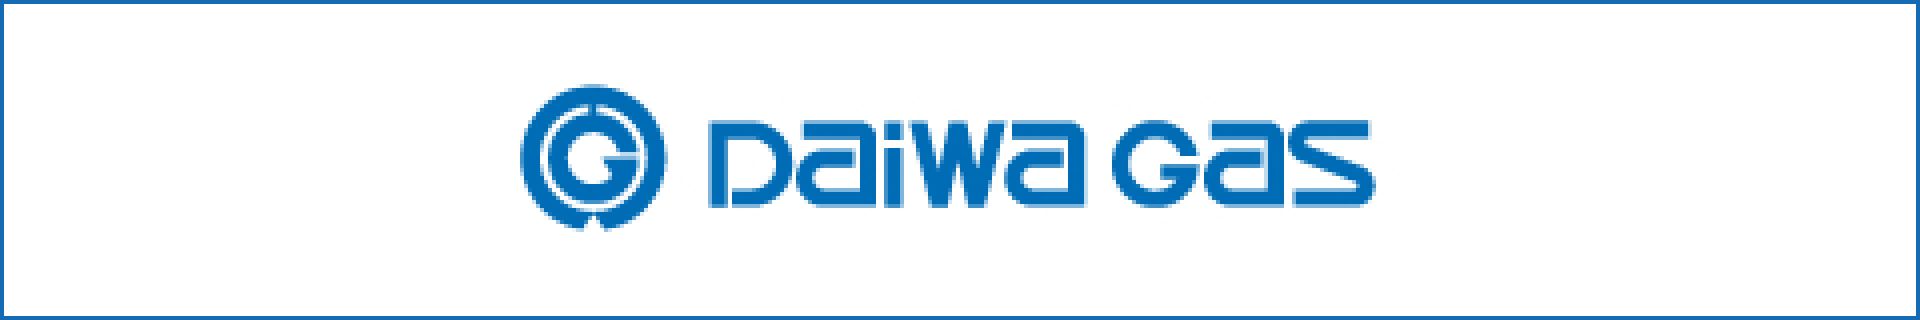 Daiwa Gas